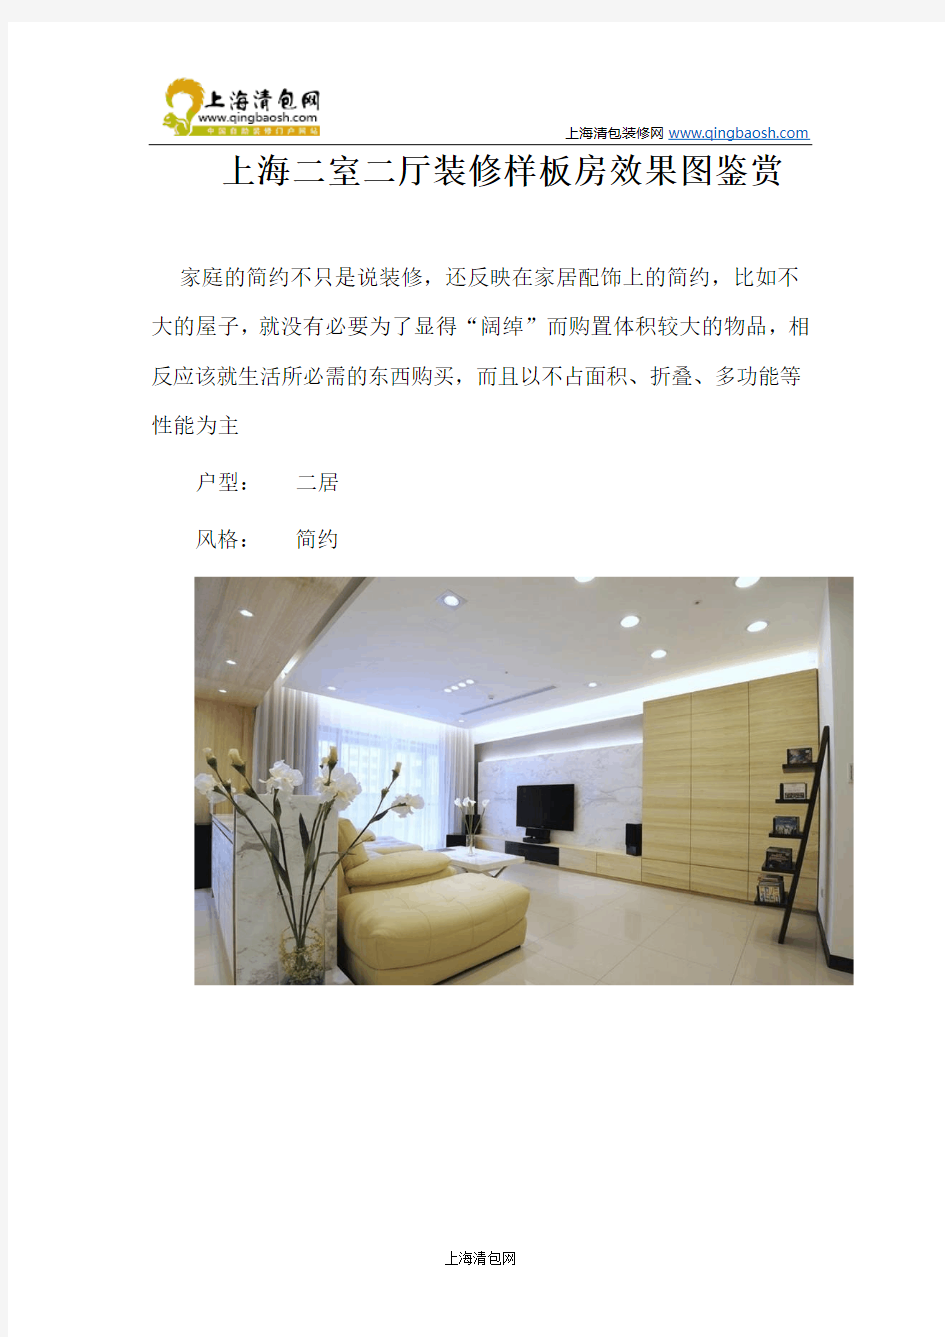 上海二室二厅装修样板房效果图鉴赏